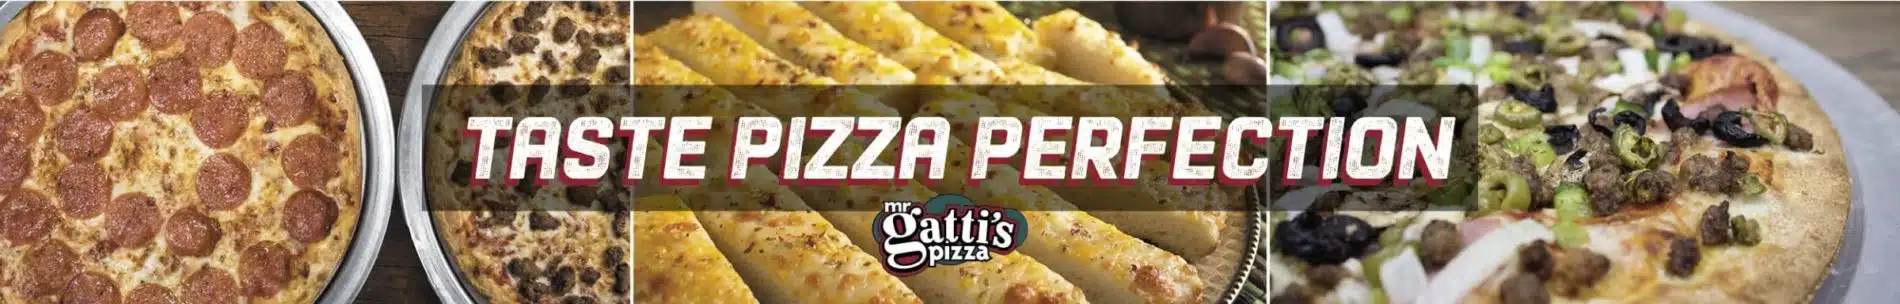 Mr Gatti's Pizza Mr Gatti's Pizza DelcoHeader